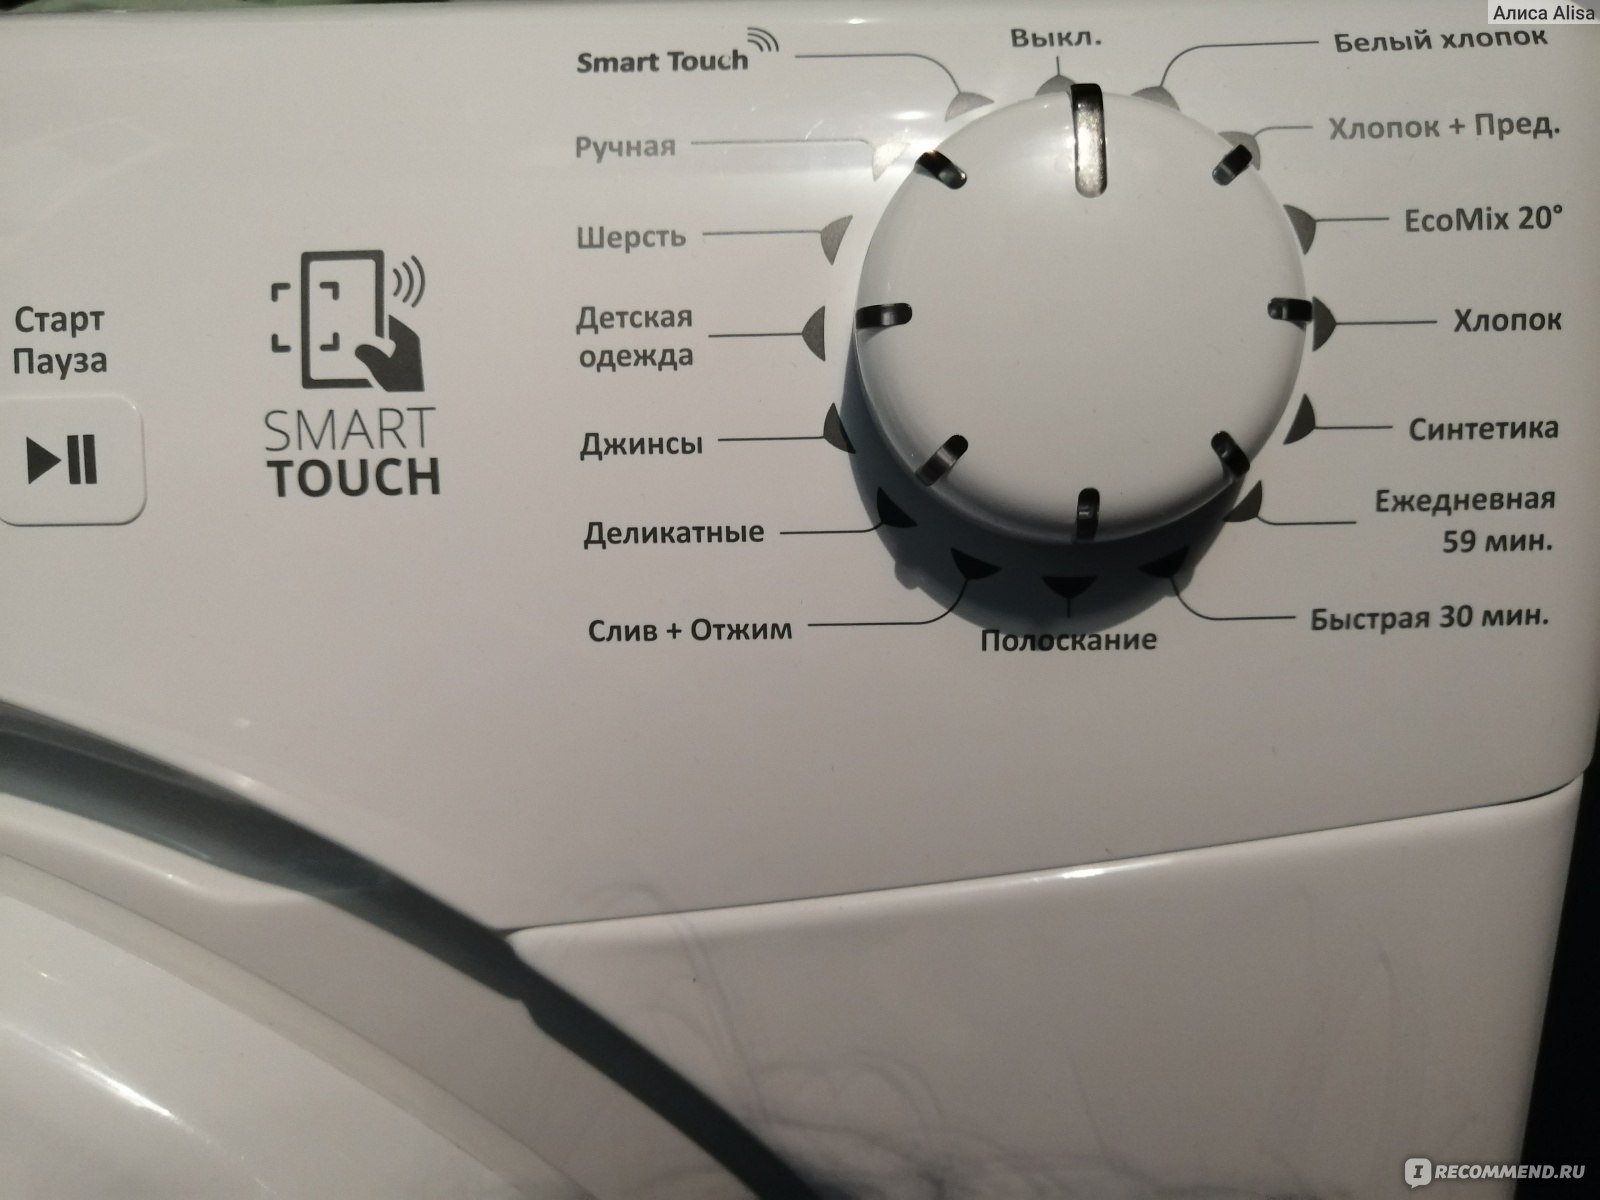 Как сбросить все настройки на стиральной машине электролюкс